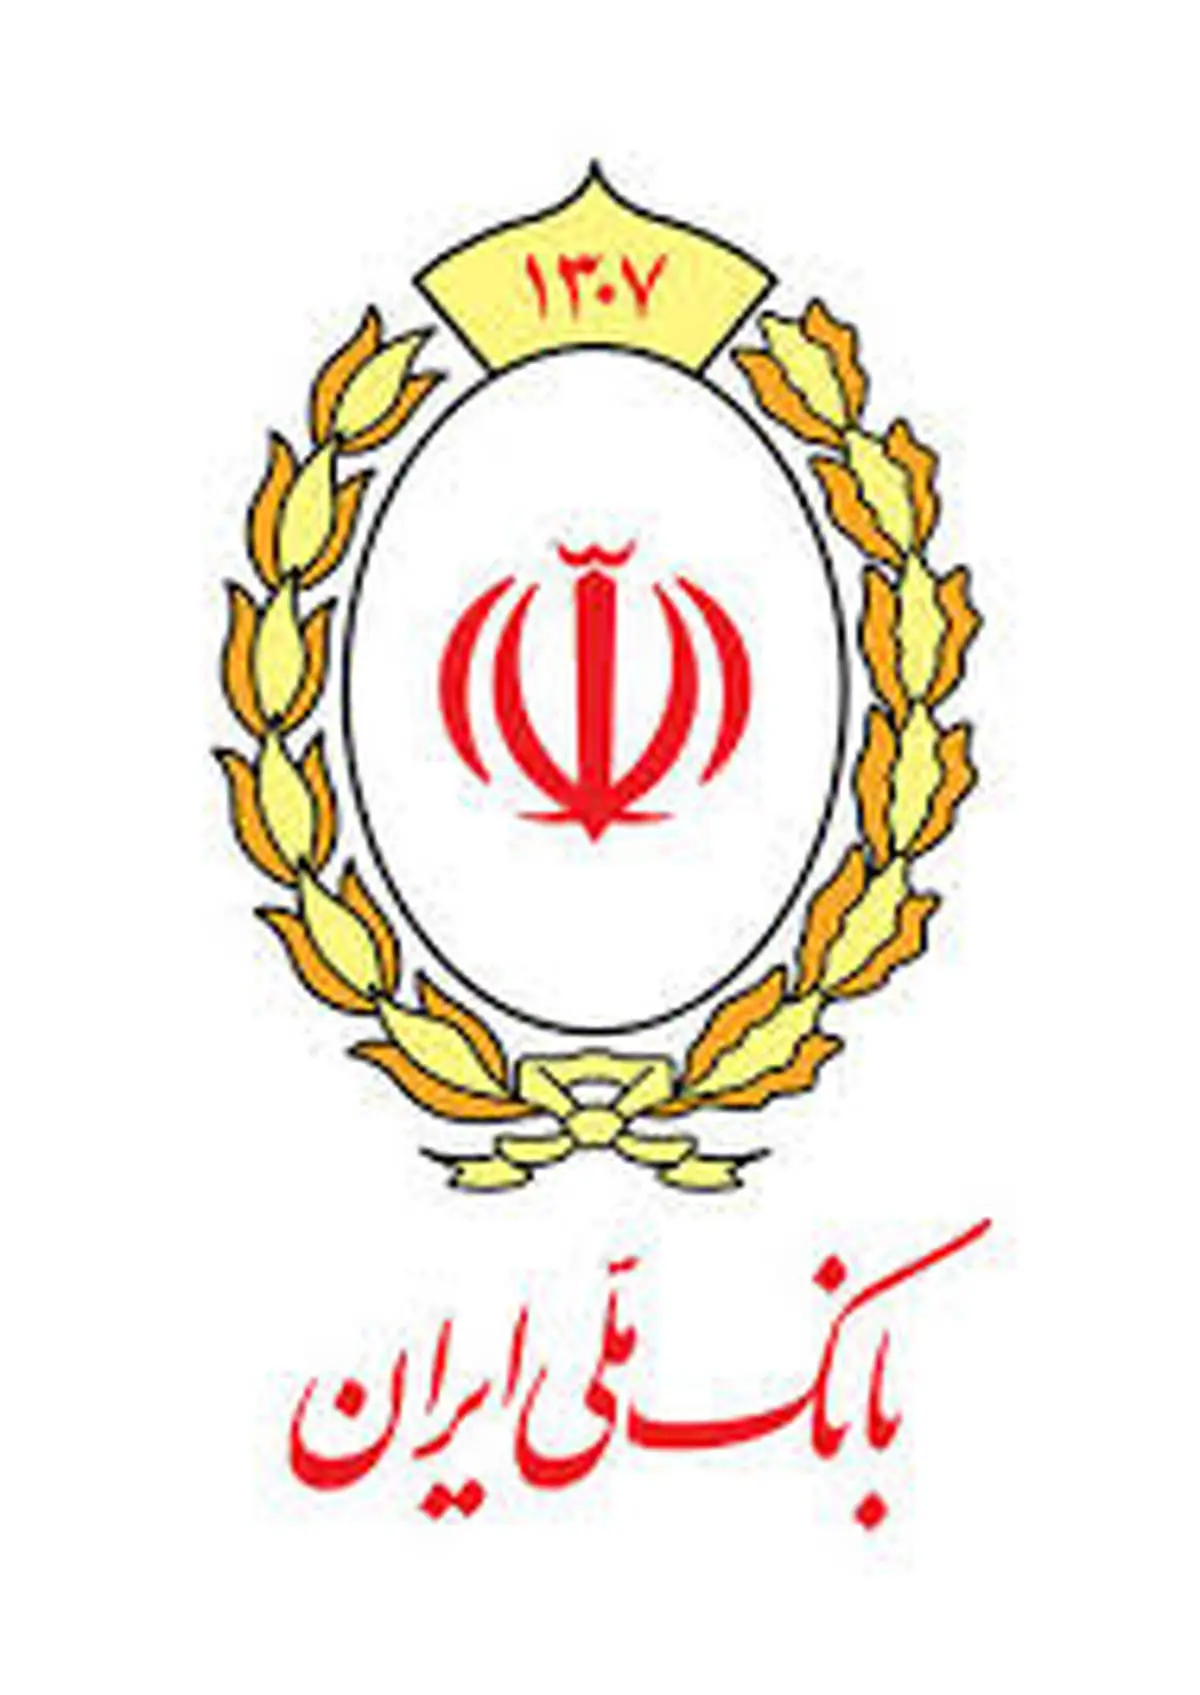 ماه مهر و مهر بانک ملی ایران برای جوانان

